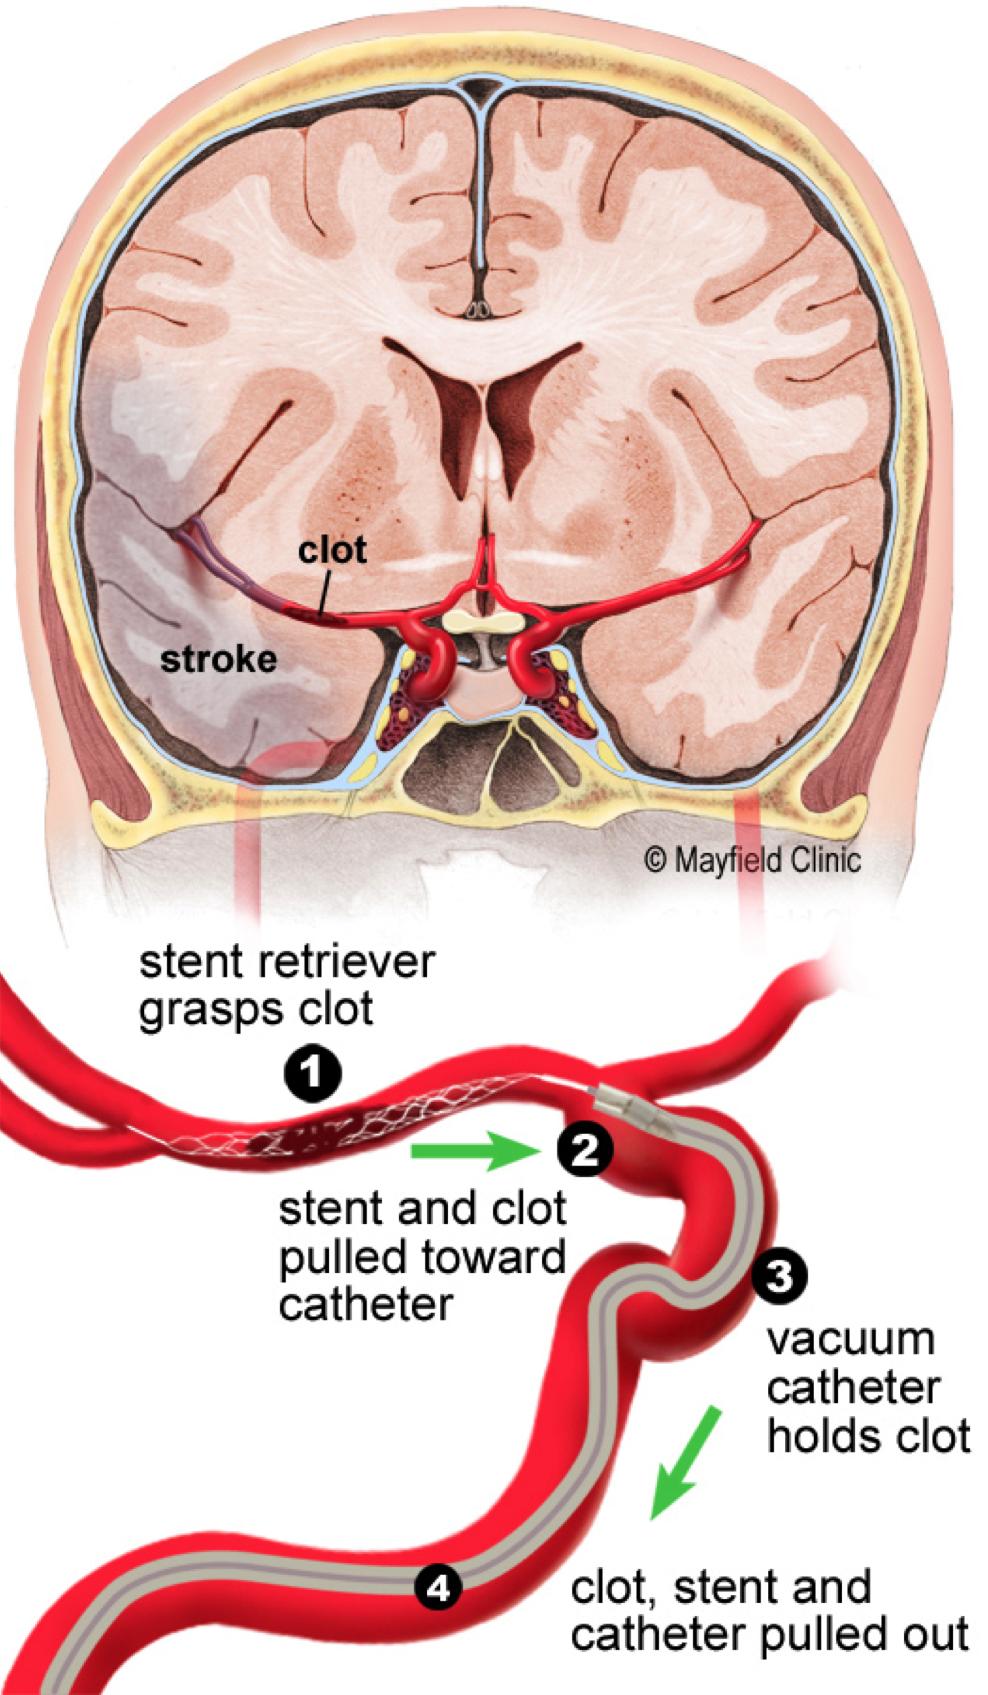 6 7 Hemorrhagic stroke treatment focuses on stopping the bleeding.